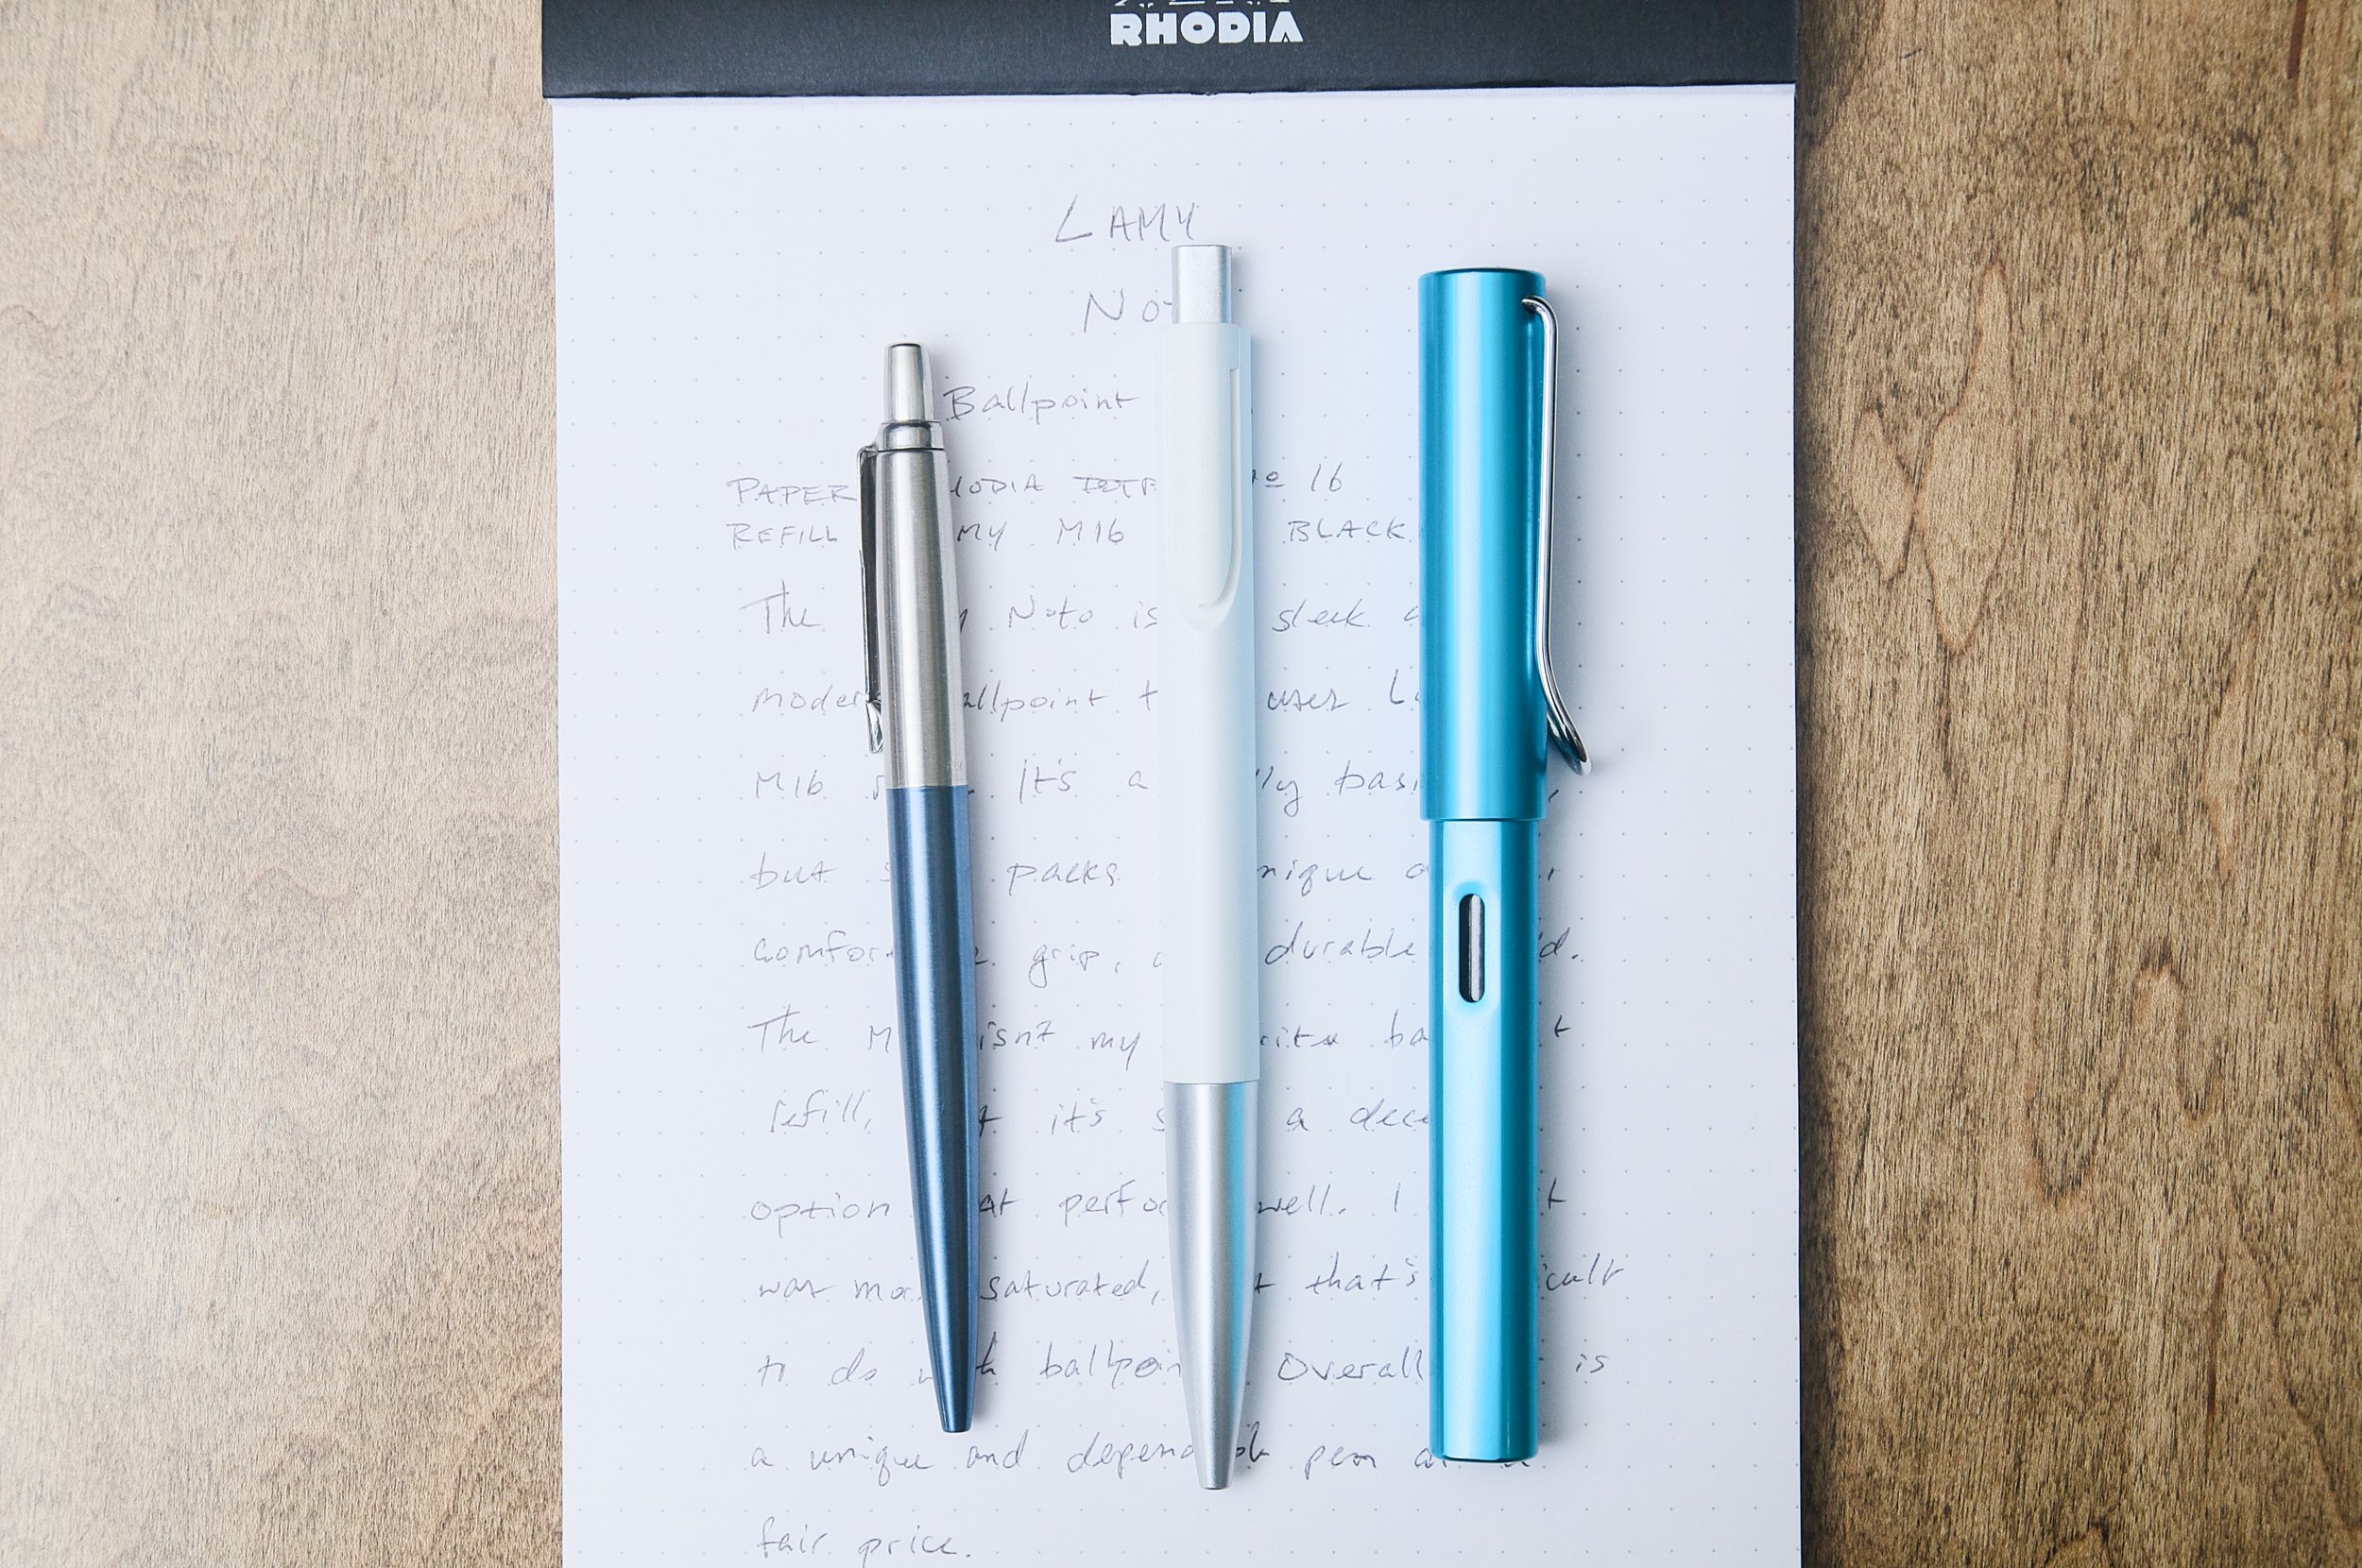 Kamio Japan SEPA Pen Case Review — The Pen Addict